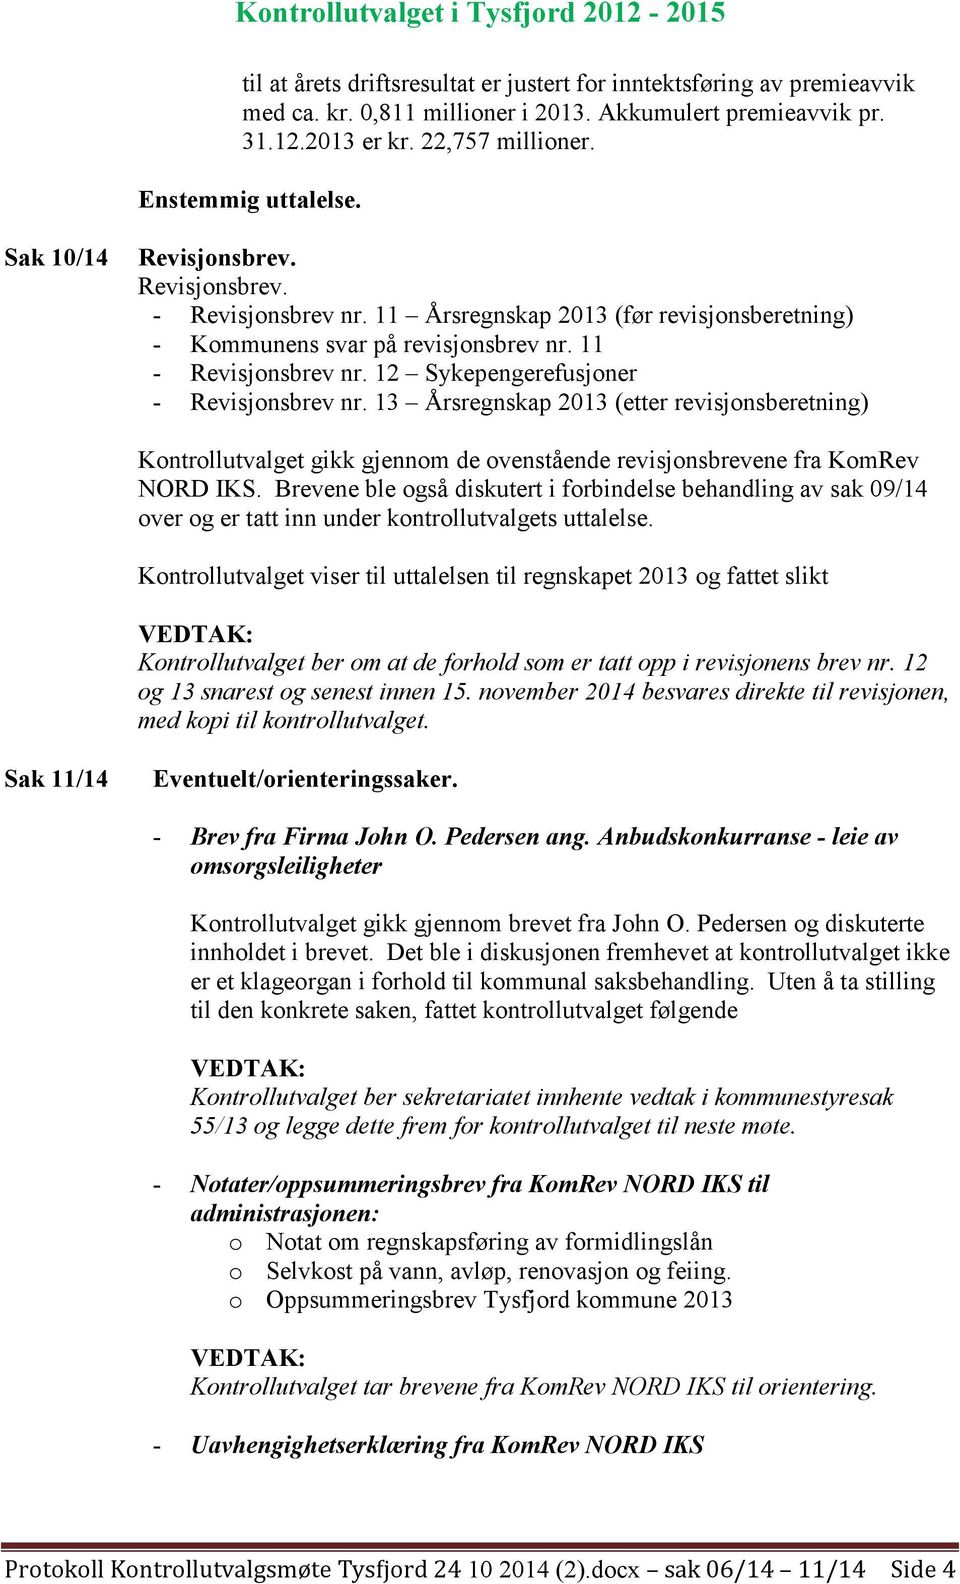 11 - Revisjonsbrev nr. 12 Sykepengerefusjoner - Revisjonsbrev nr. 13 Årsregnskap 2013 (etter revisjonsberetning) Kontrollutvalget gikk gjennom de ovenstående revisjonsbrevene fra KomRev NORD IKS.